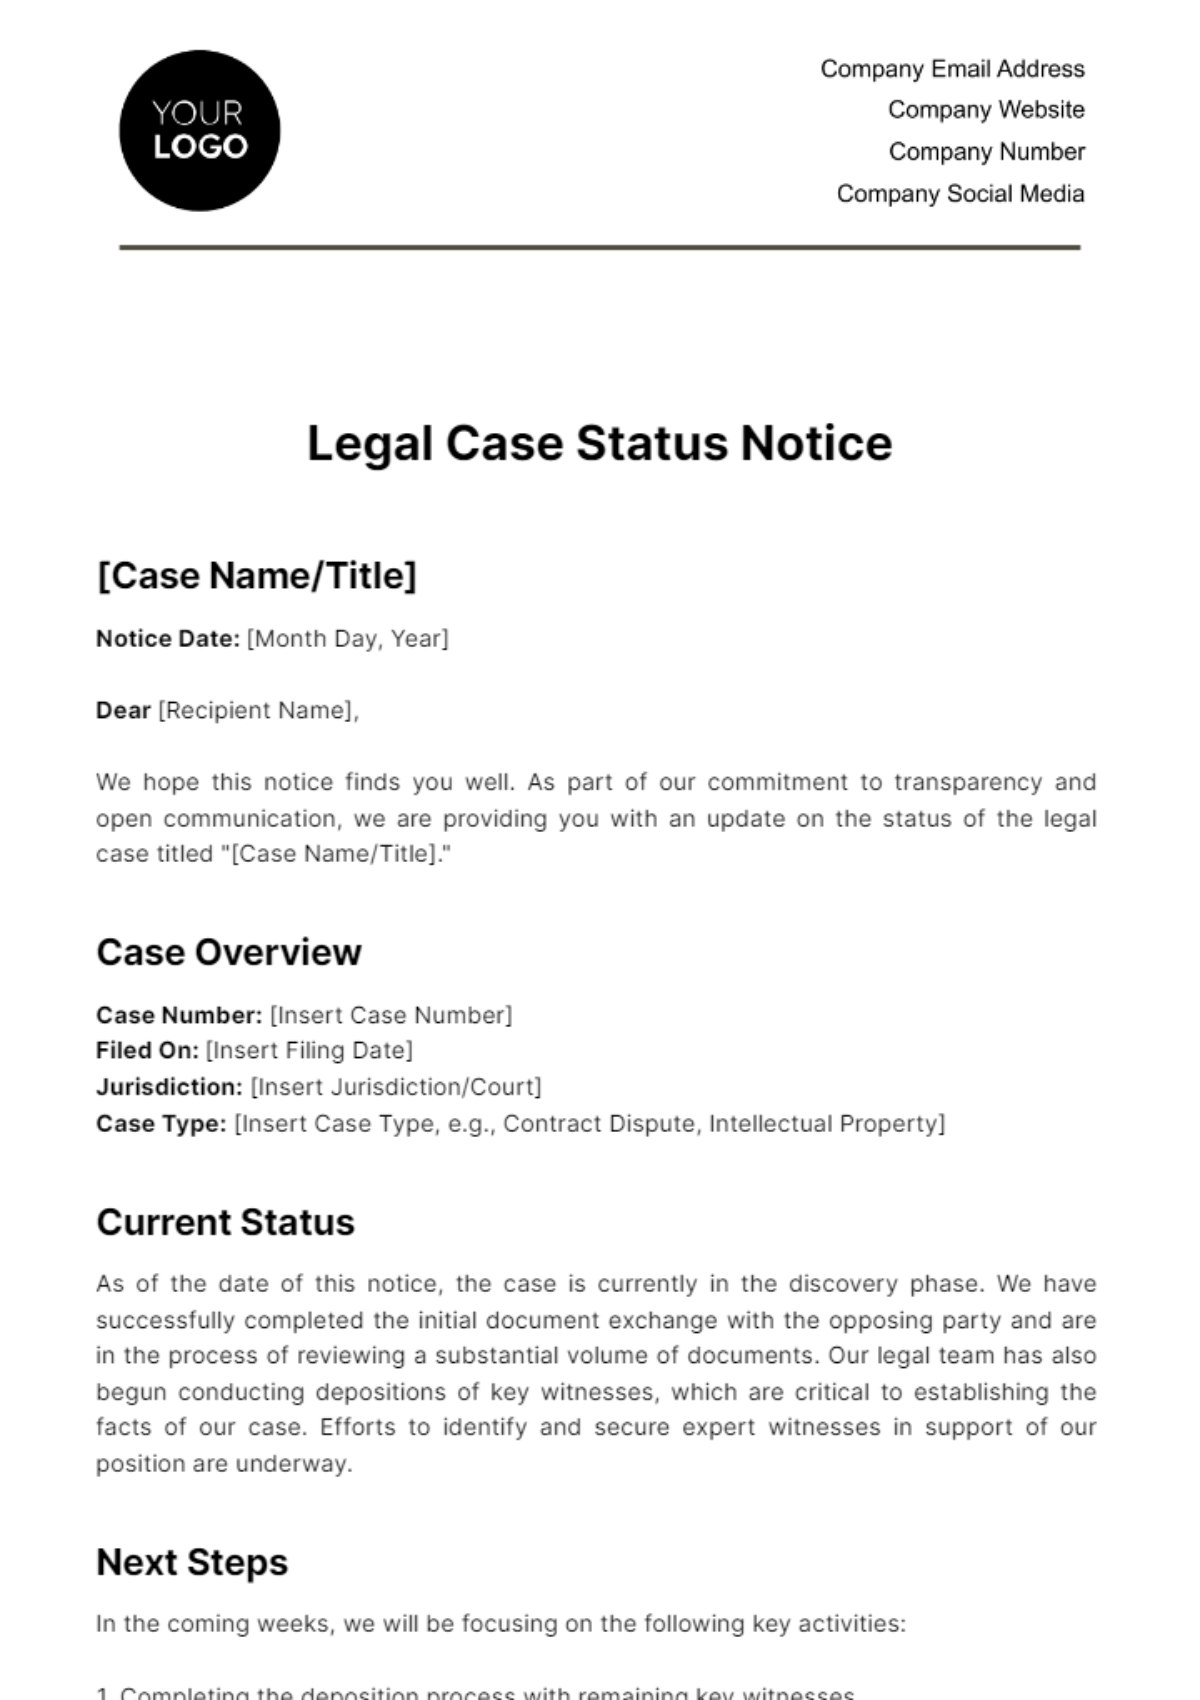 Legal Case Status Notice Template